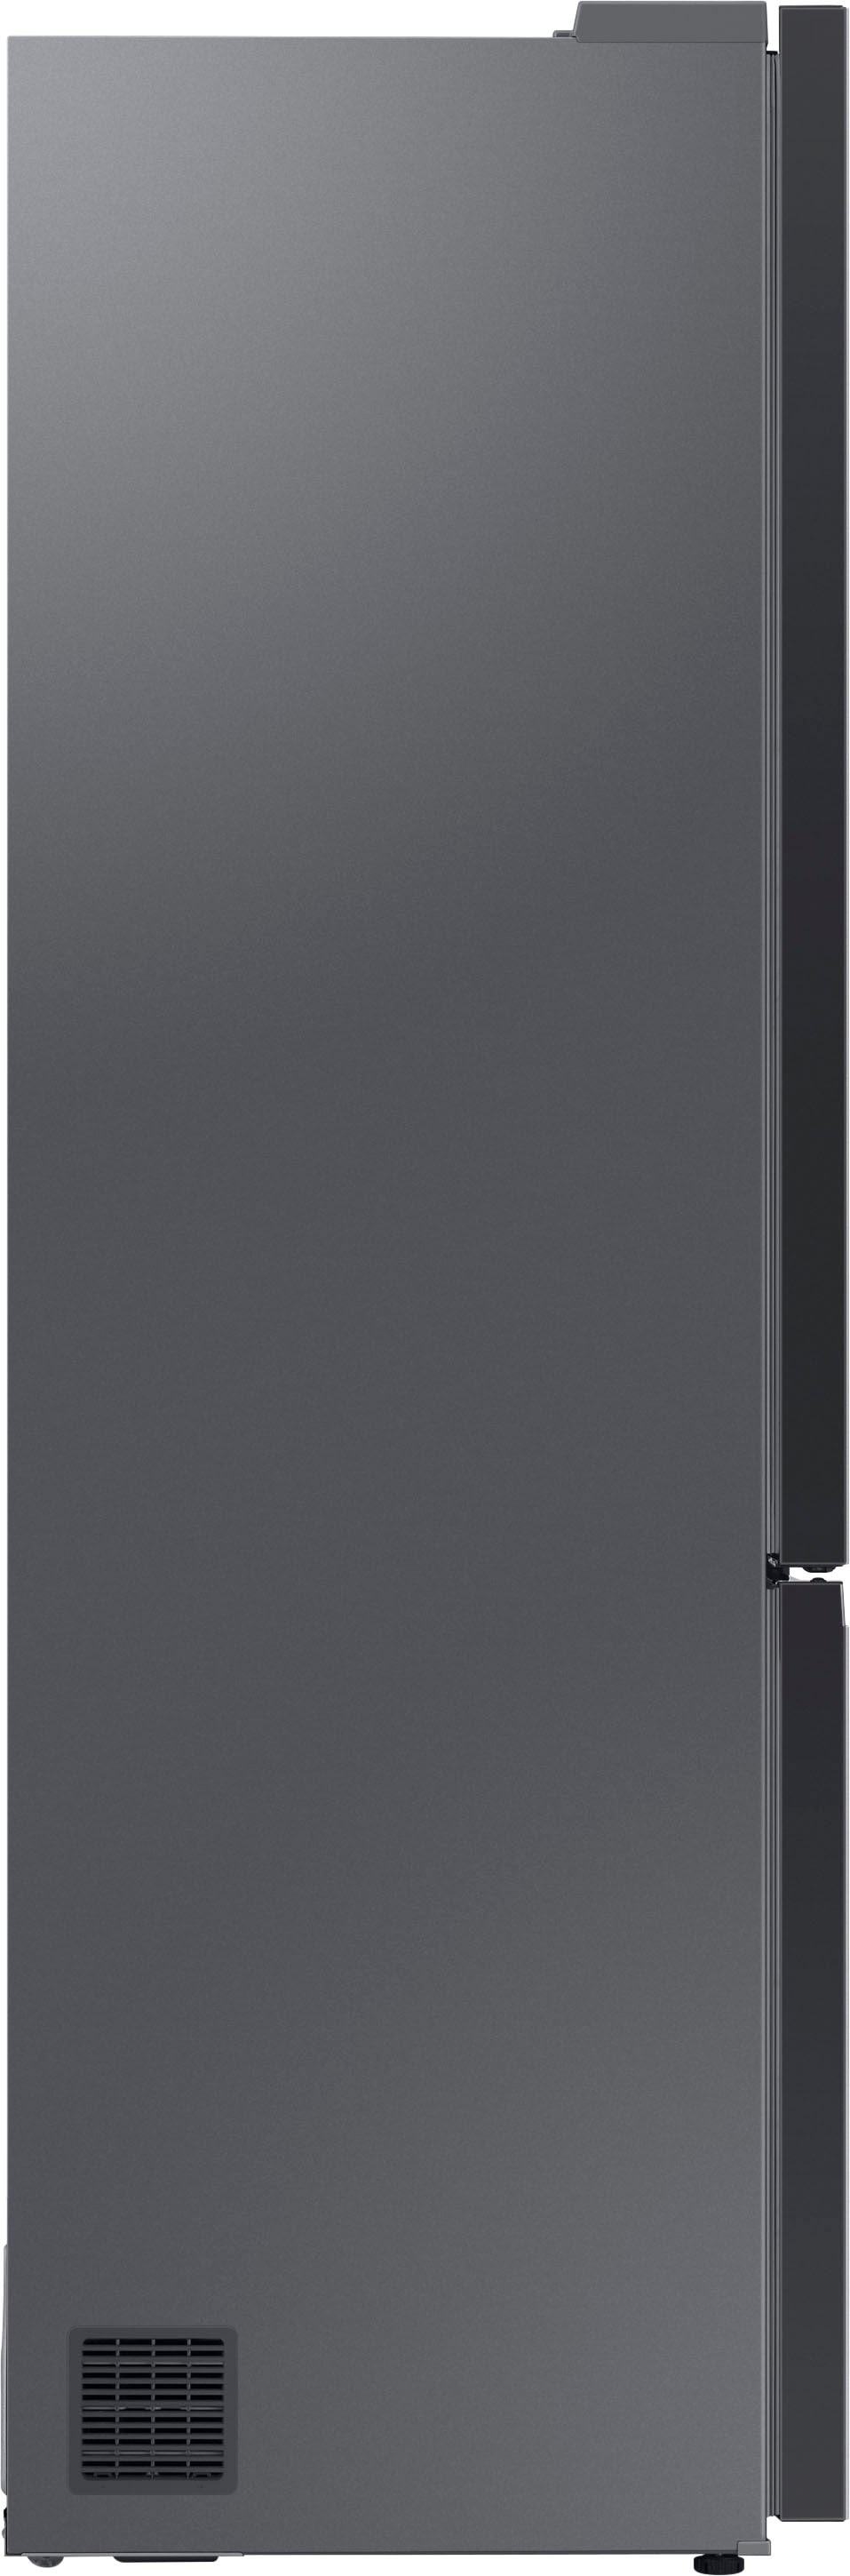 Samsung Kühl-/Gefrierkombination, Bespoke, RL38A7B5BS9, 203 cm hoch, 59,5  cm breit online bestellen